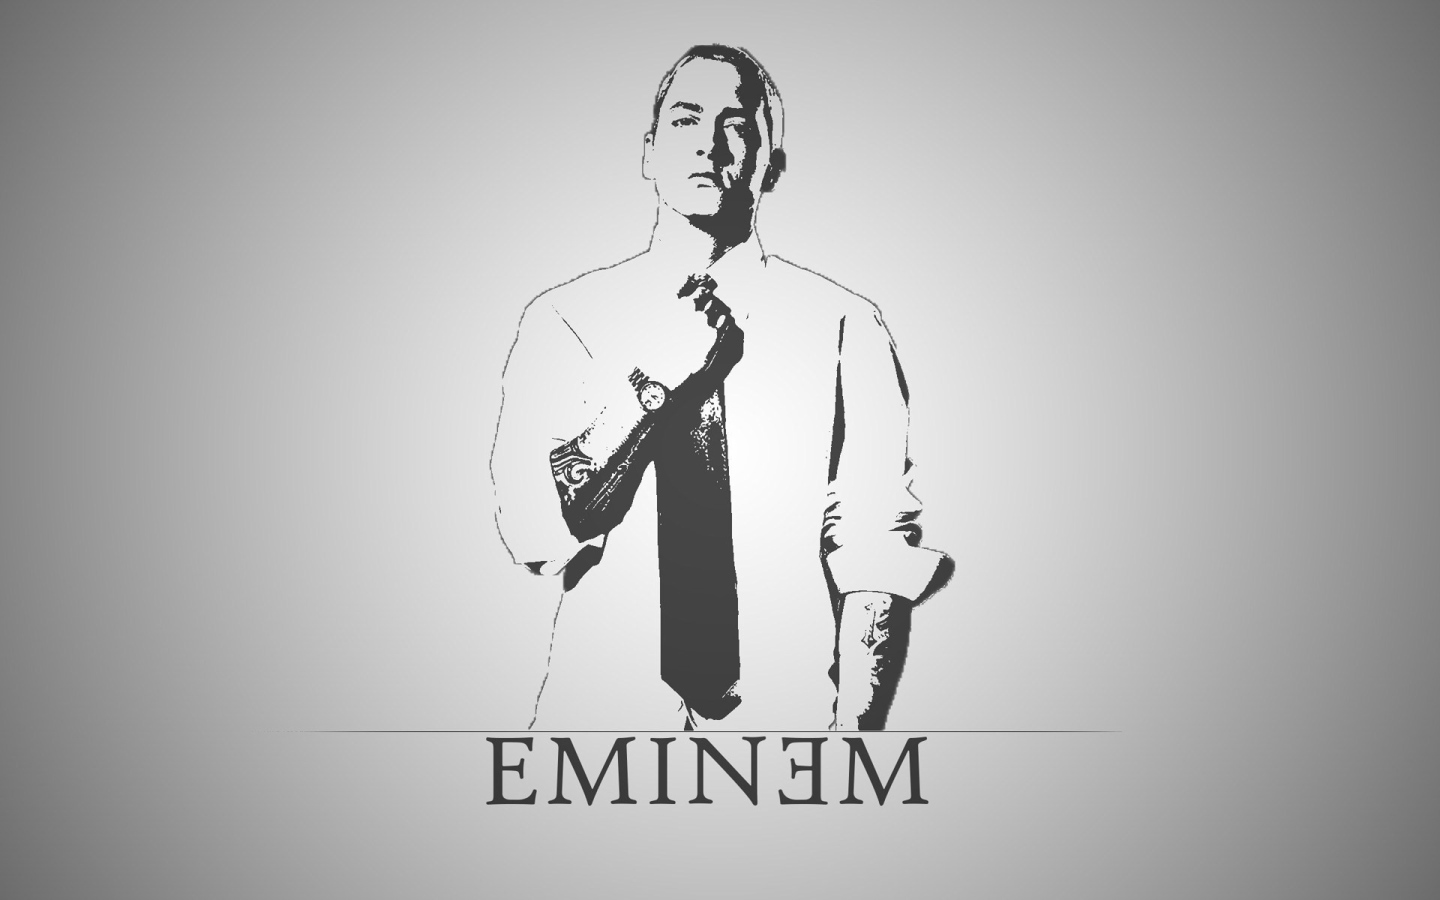 Portrait of the famous Eminem